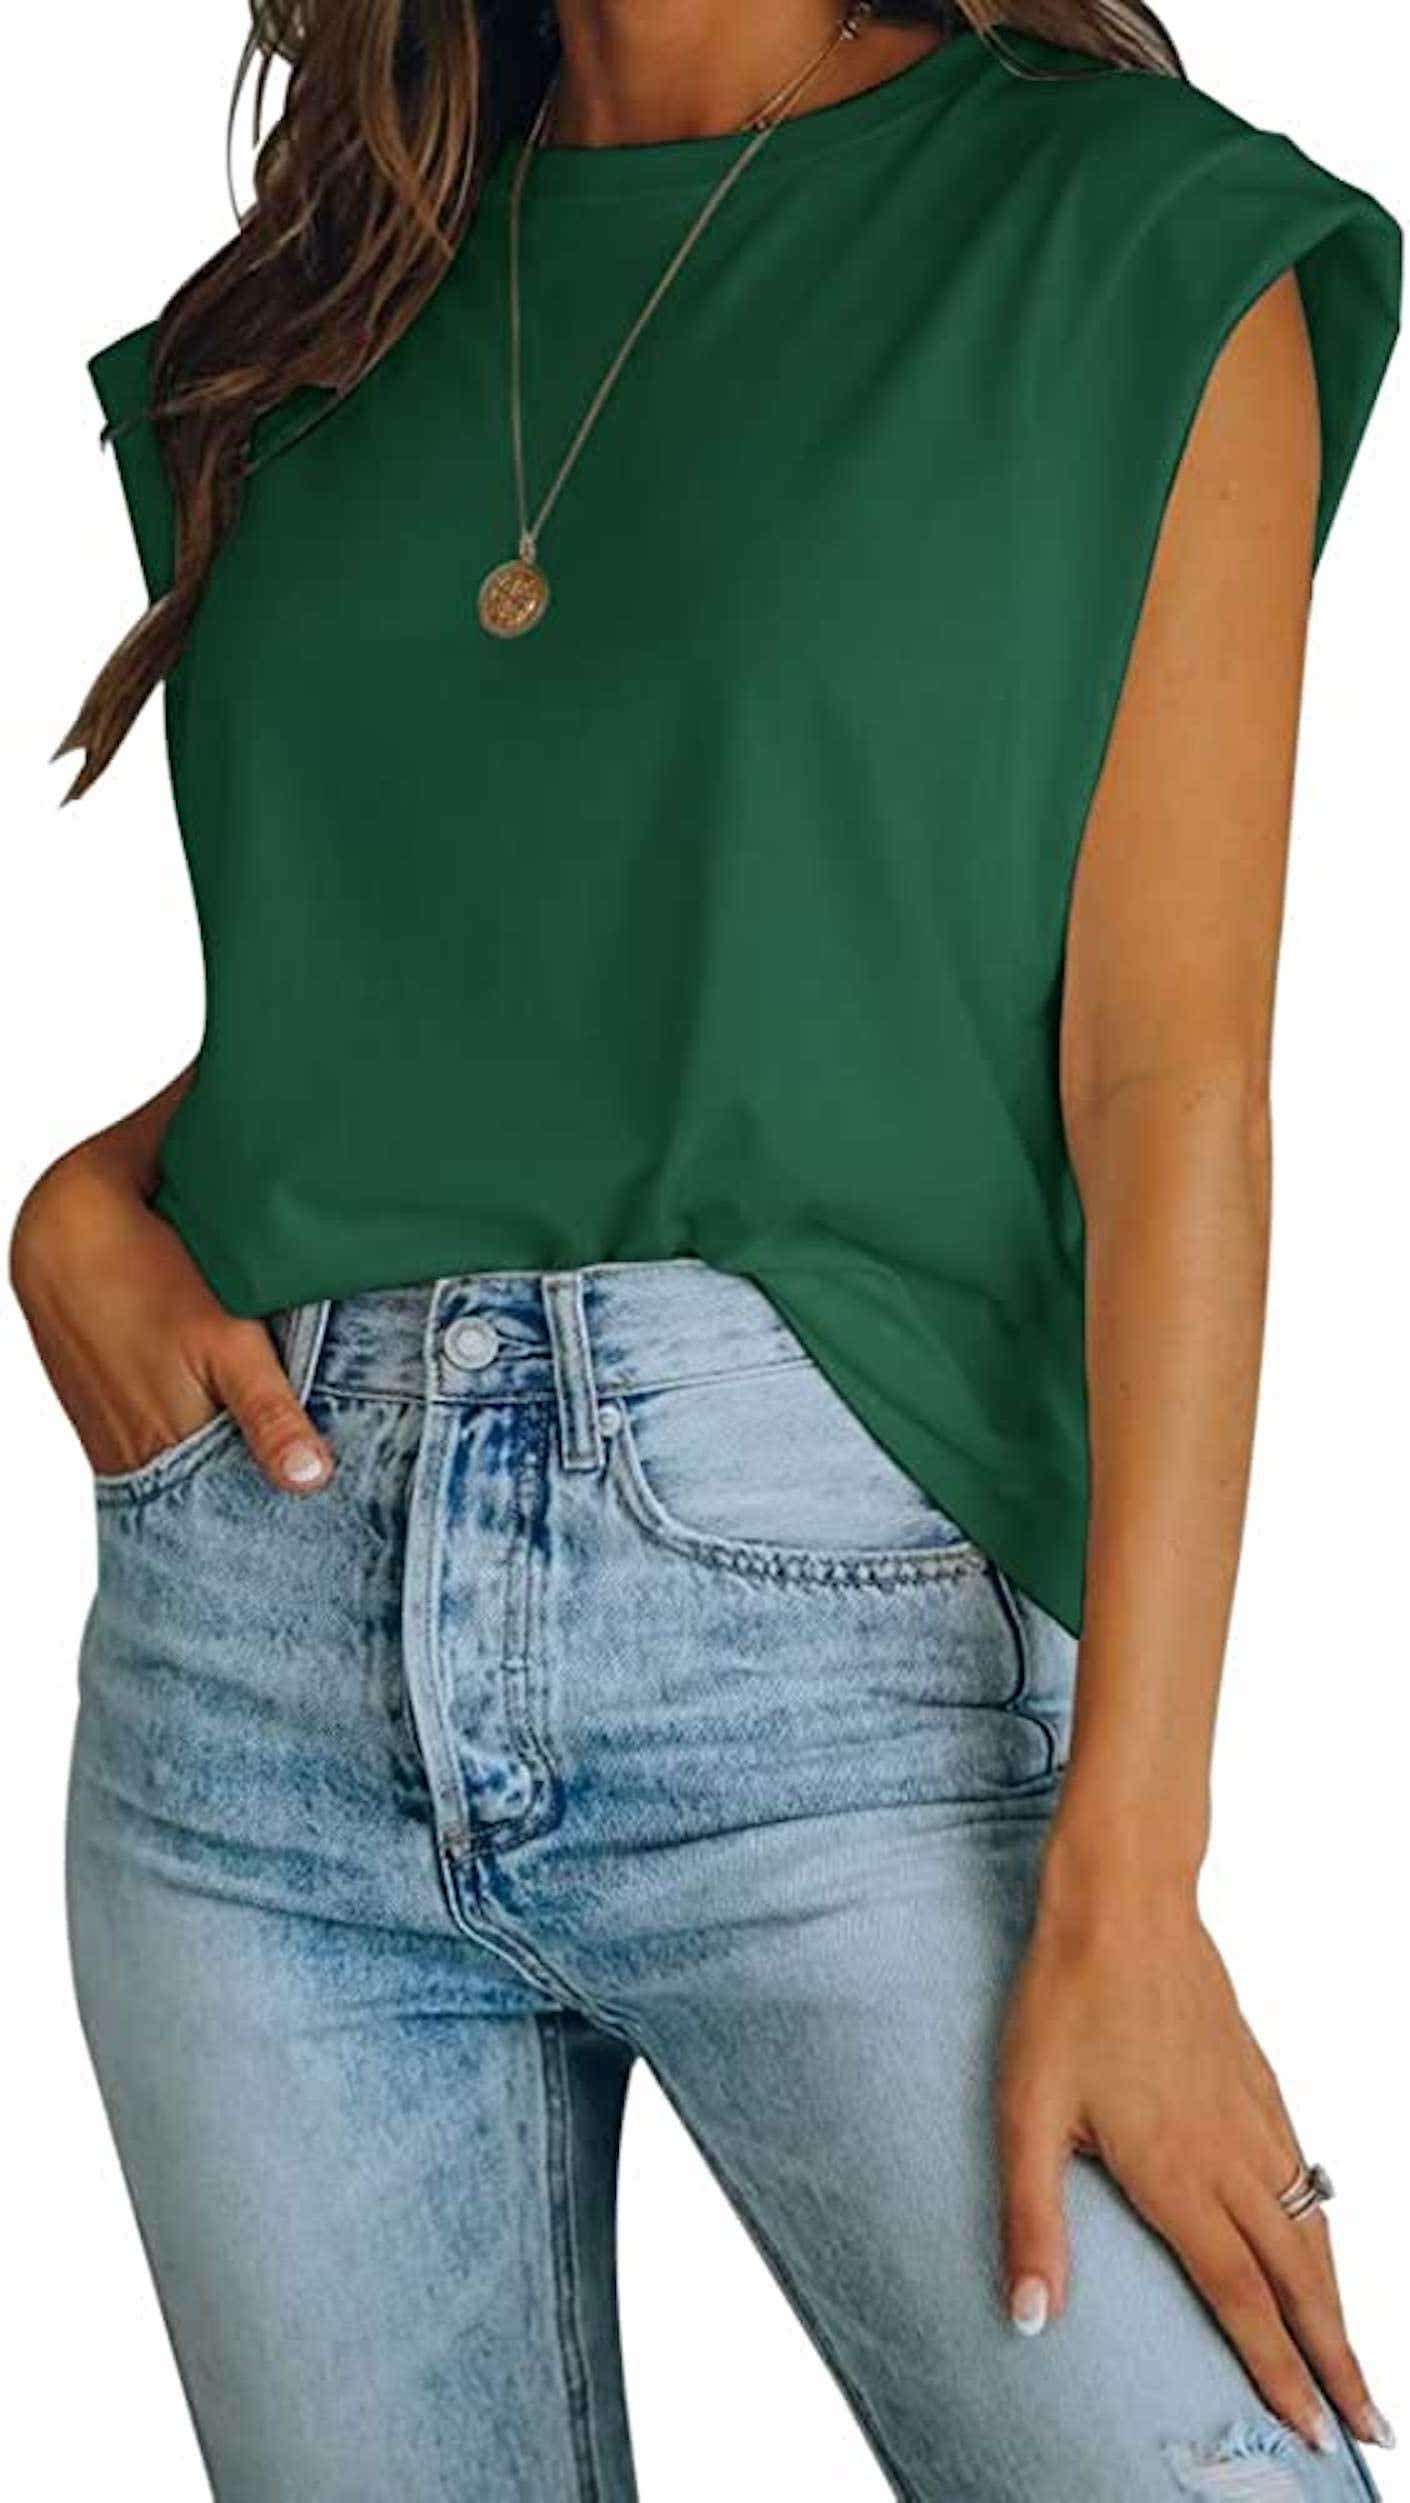 a green sleeveless t shirt